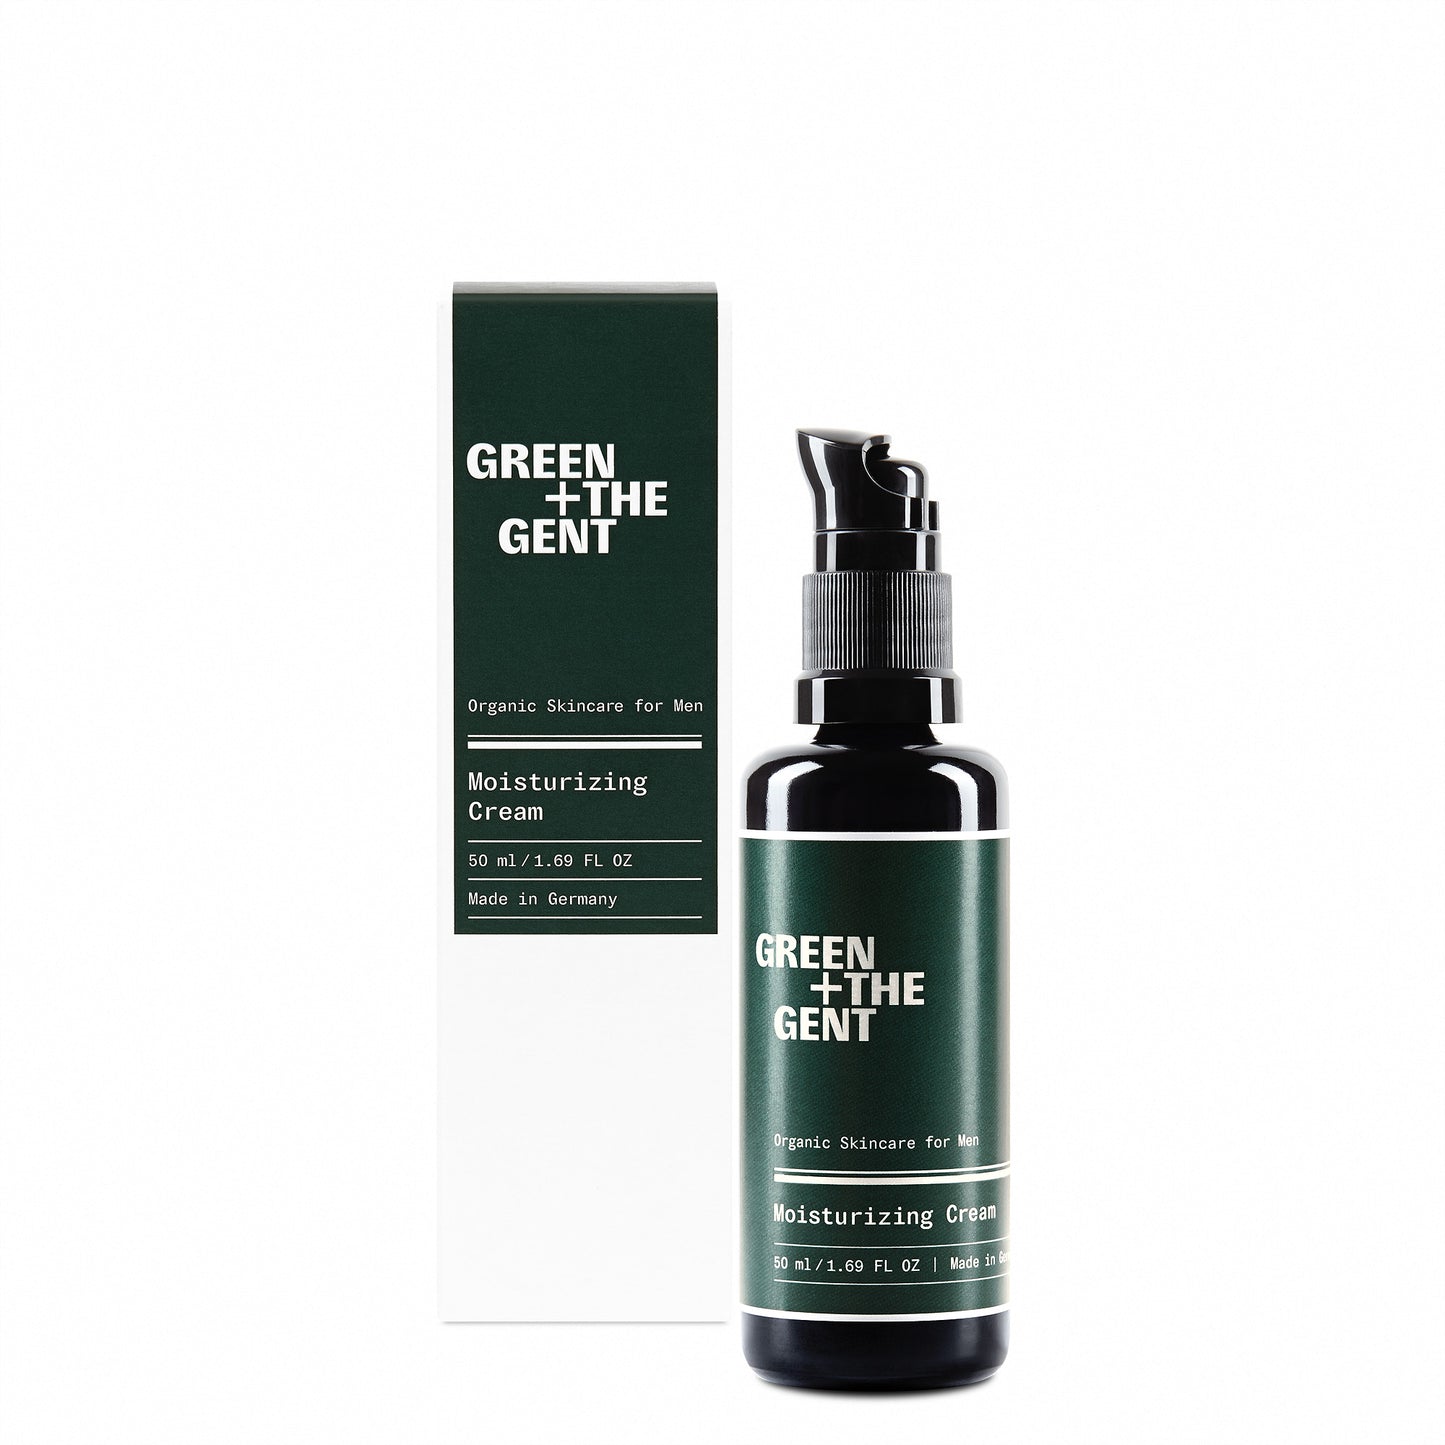 GREEN + THE GENT - Moisturizing Cream - Gesicht - 50 ml